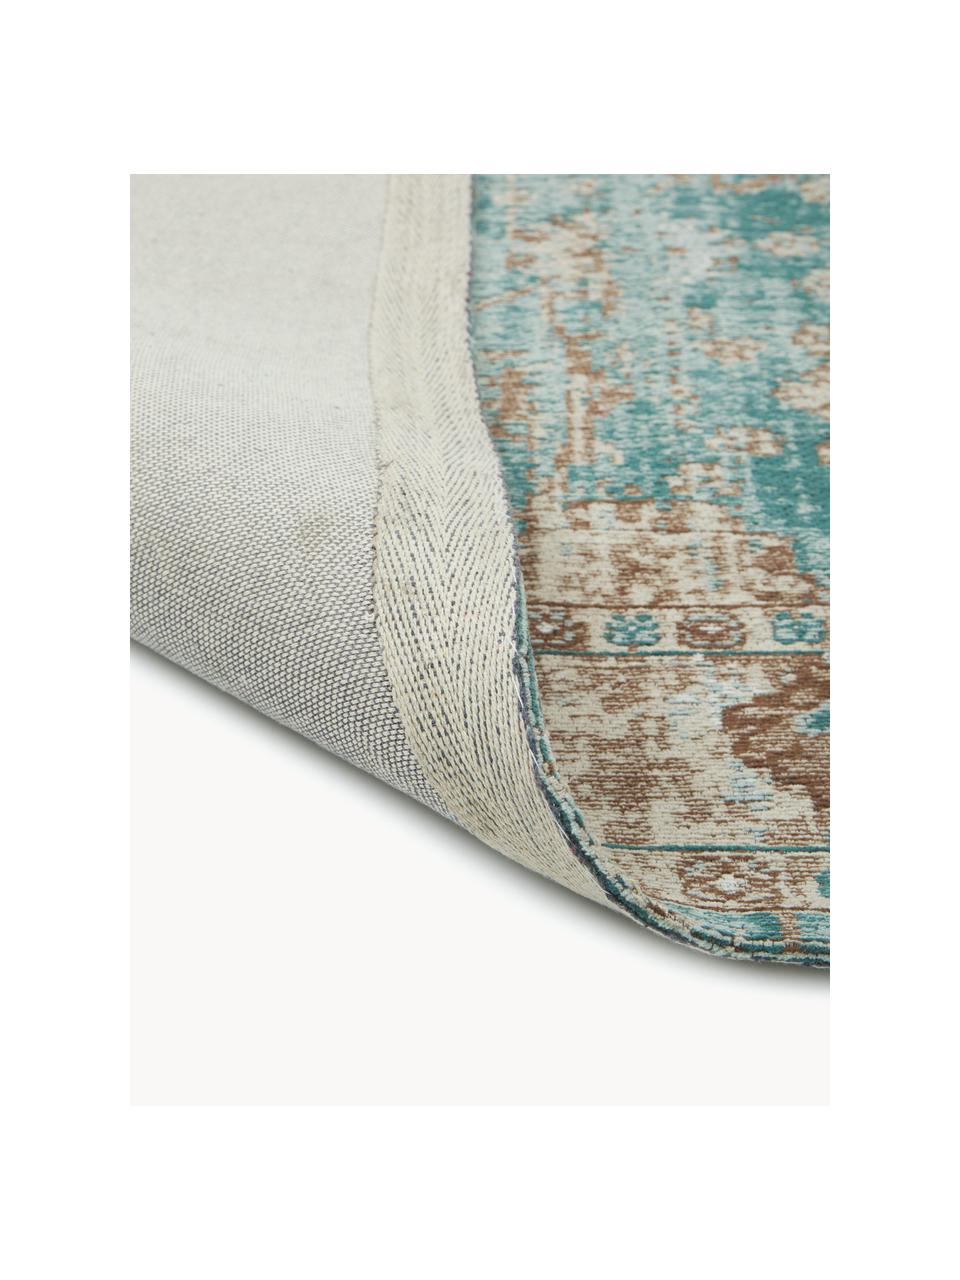 Ręcznie tkany dywan szenilowy Rimini, Turkusowy zielony, beżowy, brązowy, S 160 x D 230 cm (Rozmiar M)